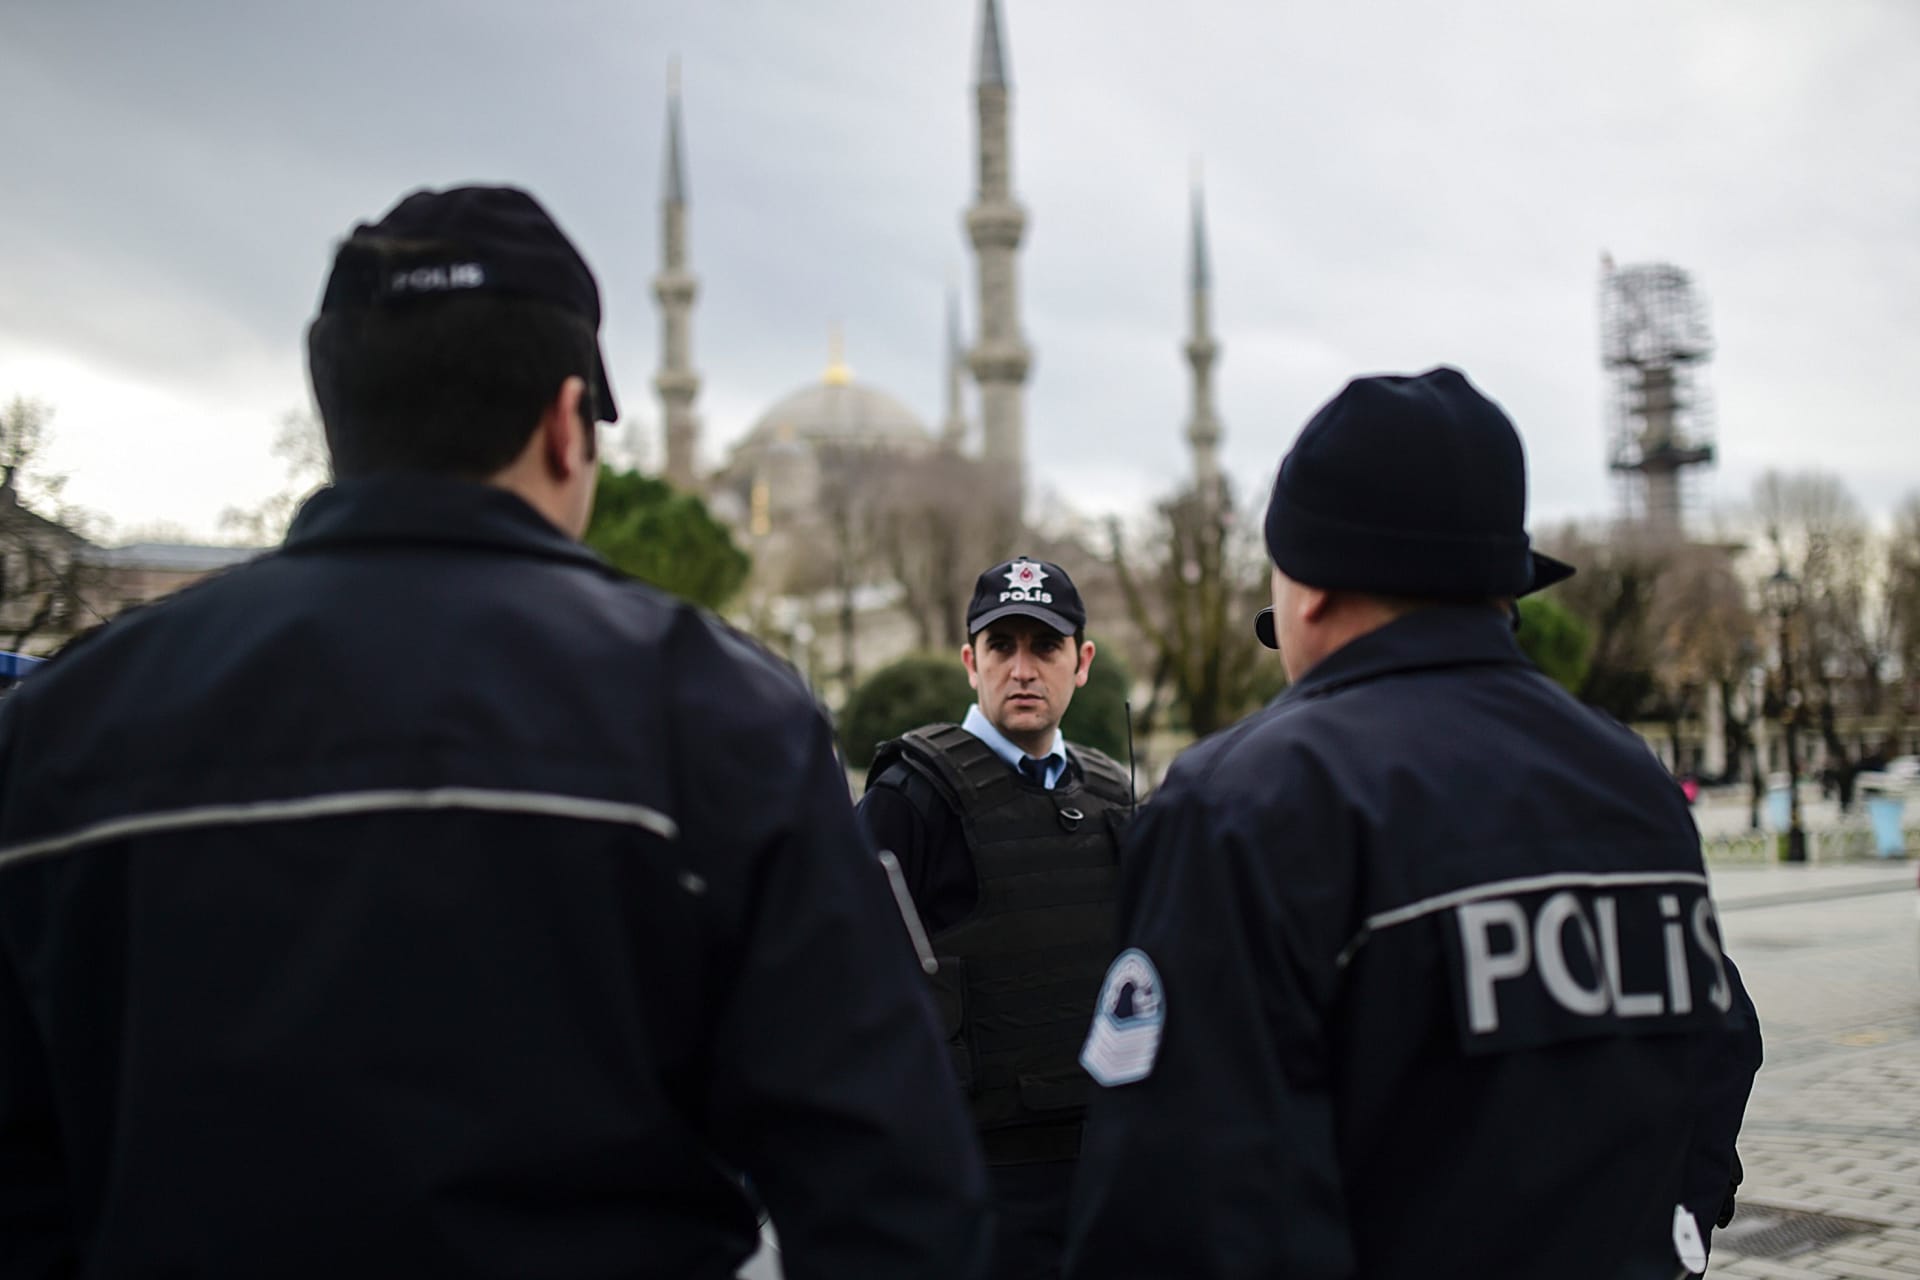 بعد اعتقال مزعوم بسبب تصوير قصر أردوغان.. إسرائيل تعلق على احتجاز مواطنين في تركيا